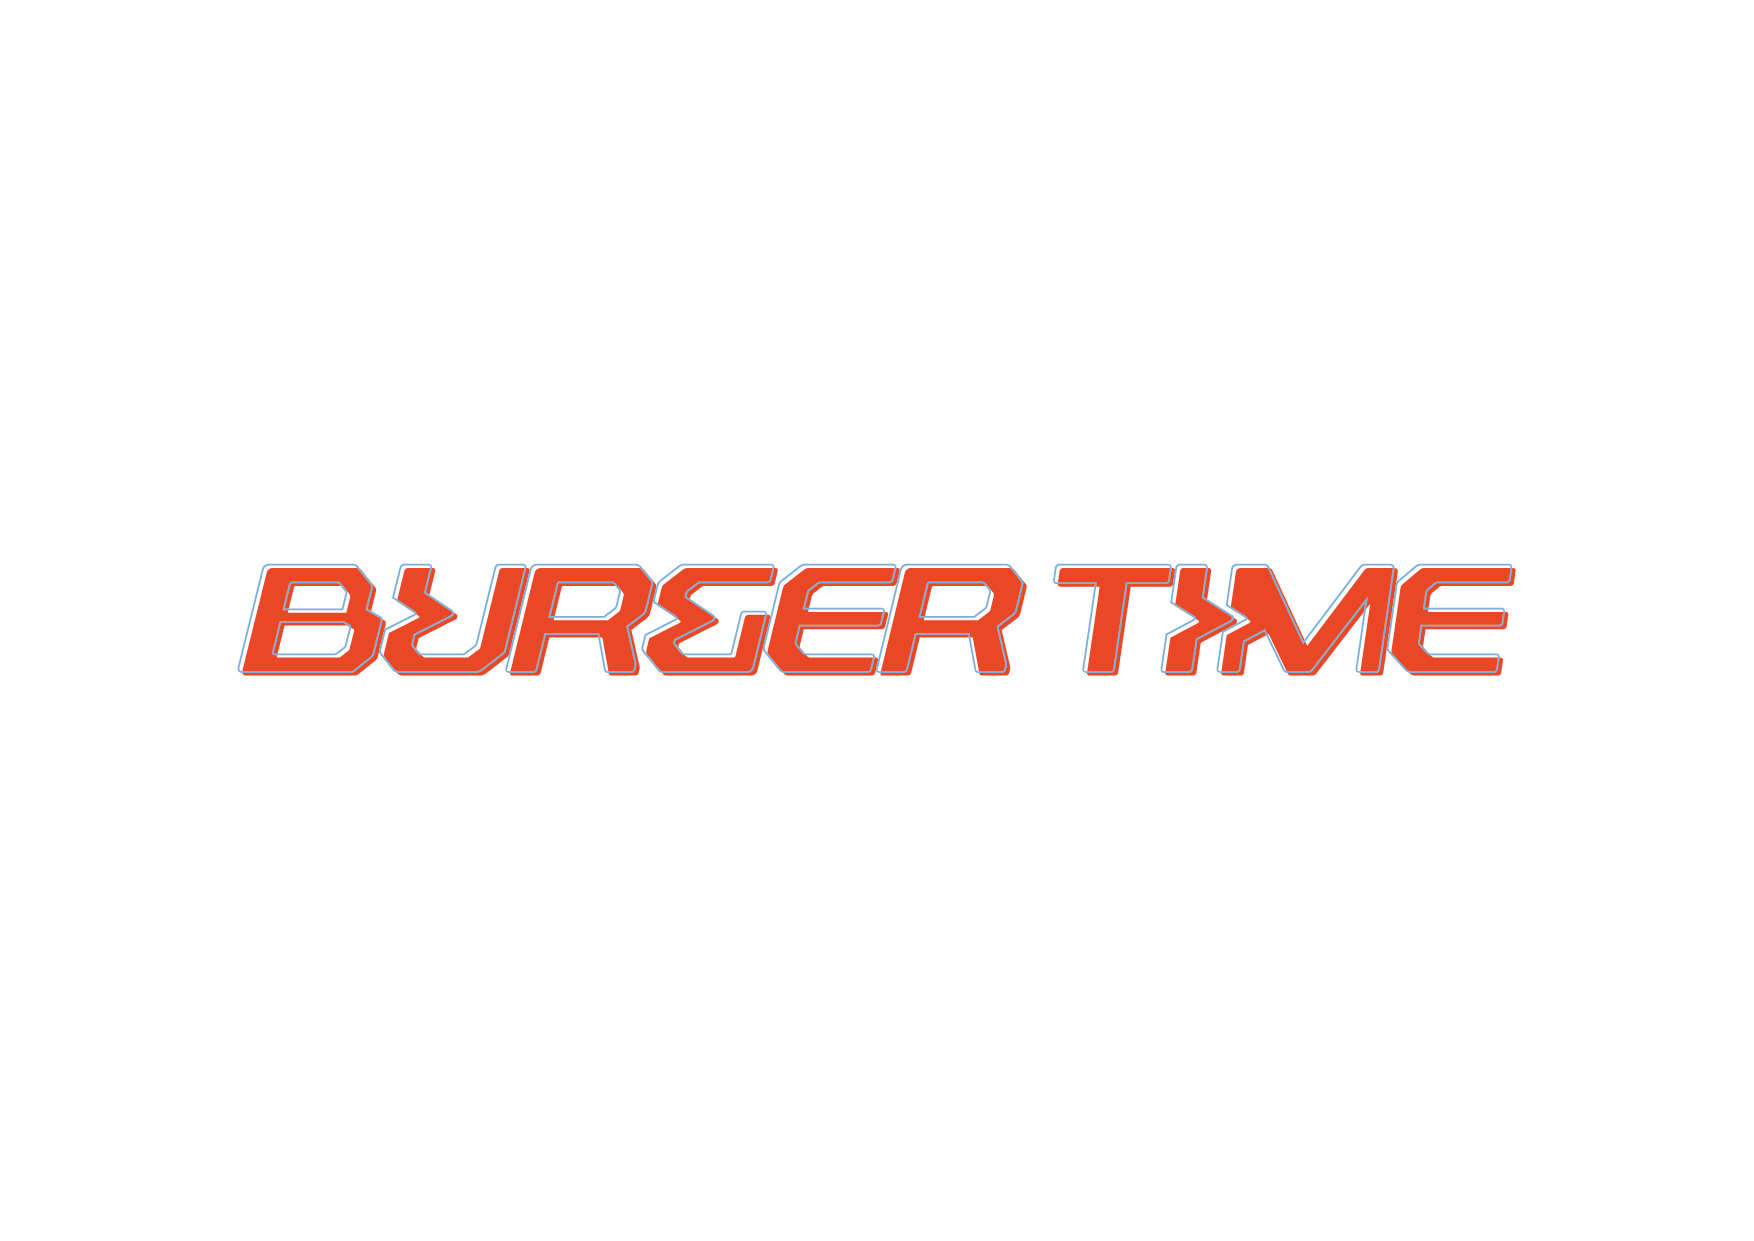 BURGER TIME